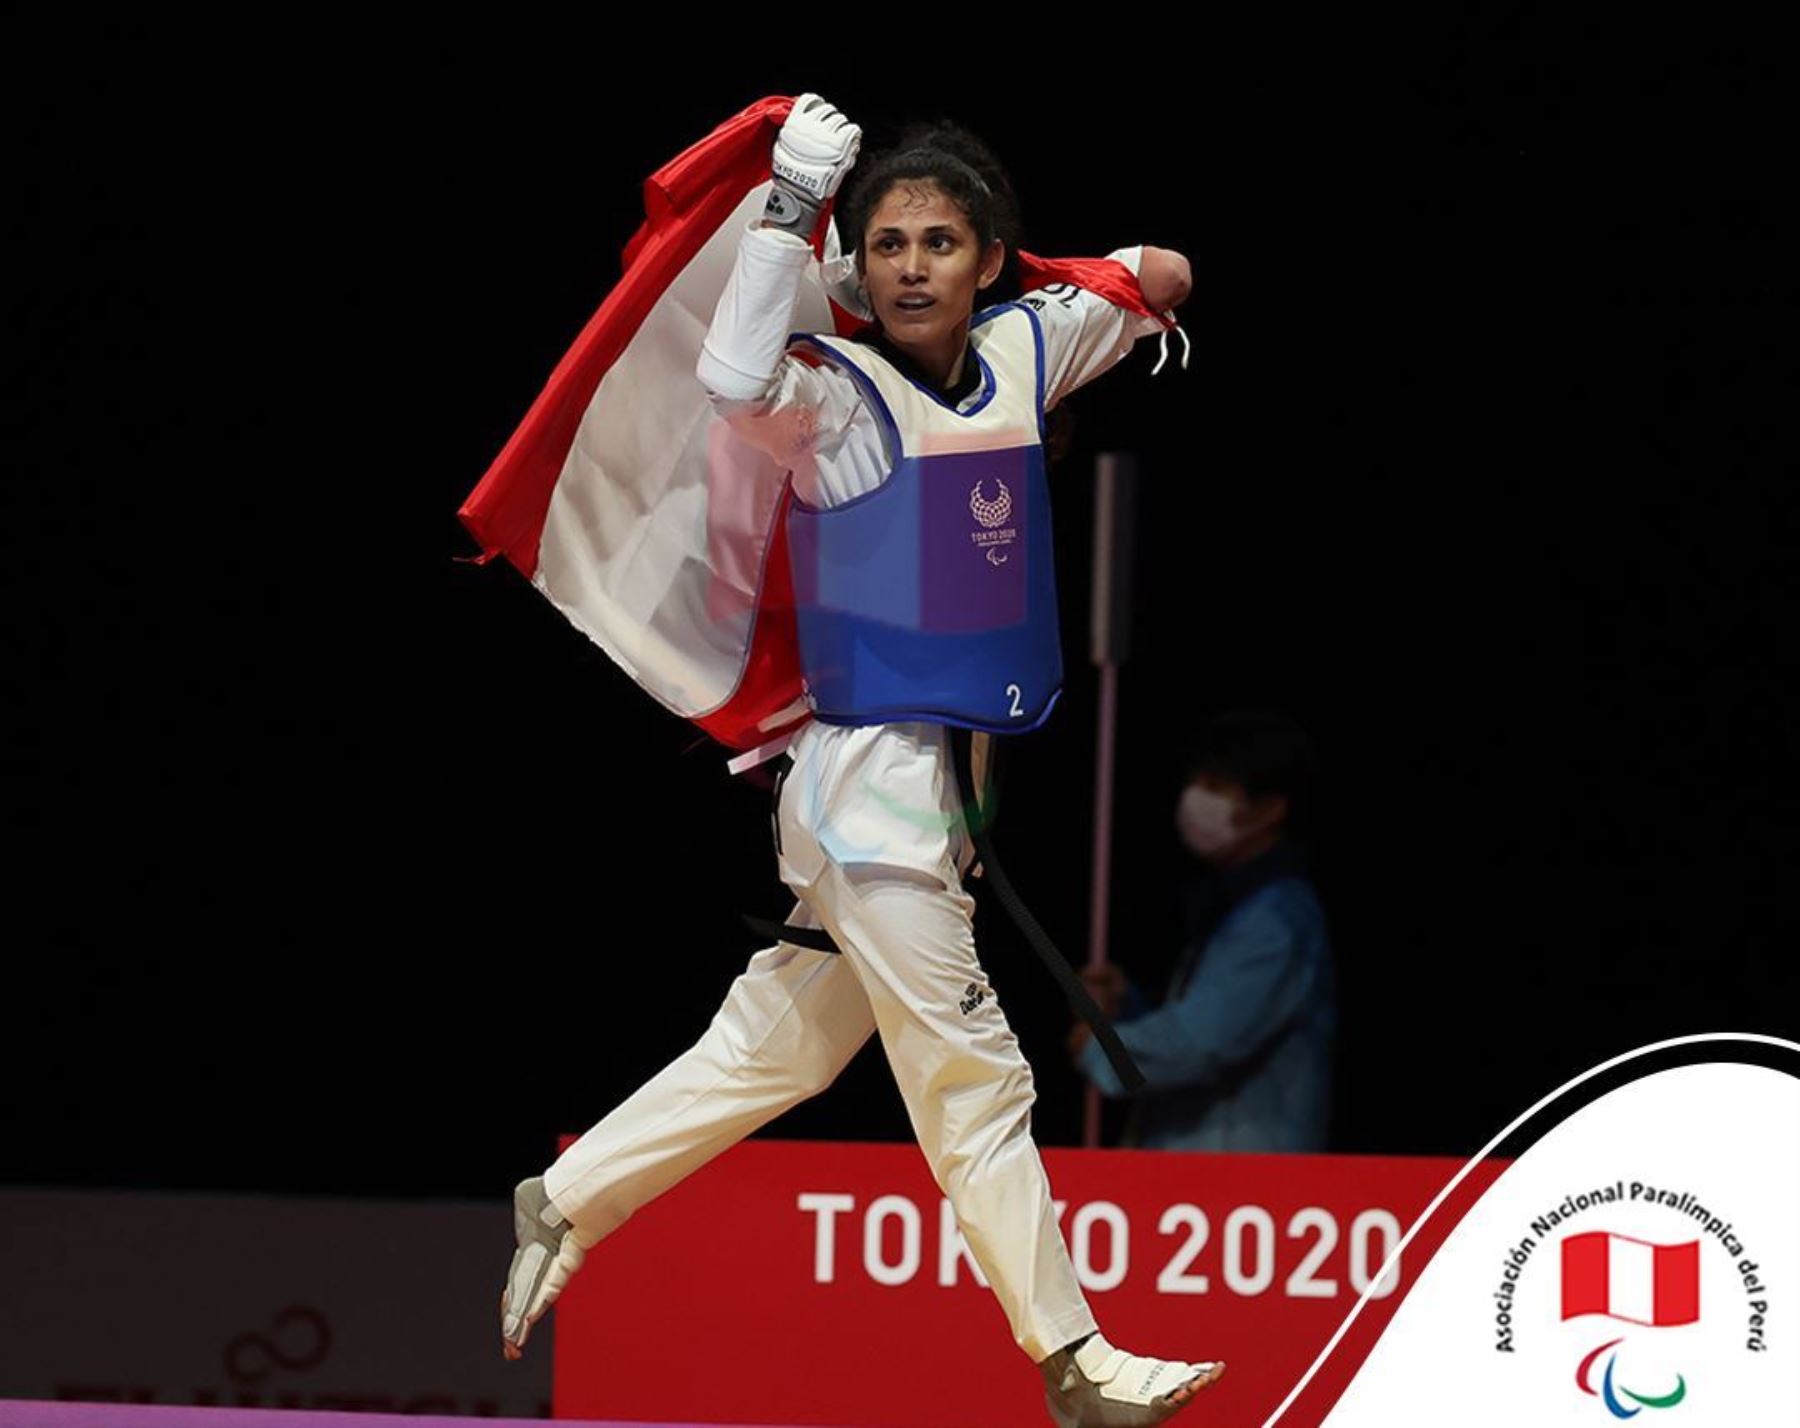 Angélica Espinoza le da al Perú la medalla de oro en los Juegos Tokio 2020  | Noticias | Agencia Peruana de Noticias Andina